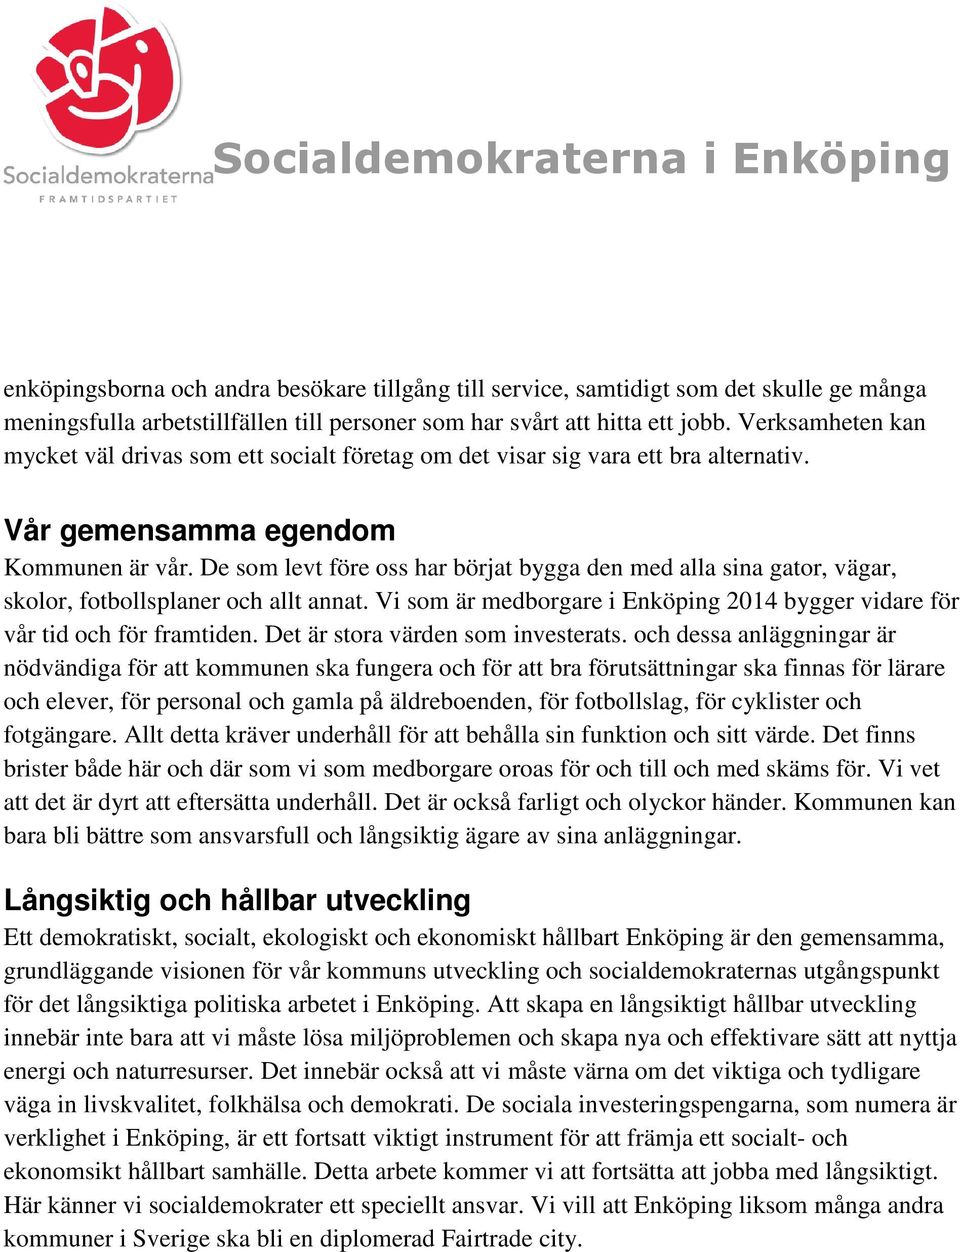 De som levt före oss har börjat bygga den med alla sina gator, vägar, skolor, fotbollsplaner och allt annat. Vi som är medborgare i Enköping 2014 bygger vidare för vår tid och för framtiden.